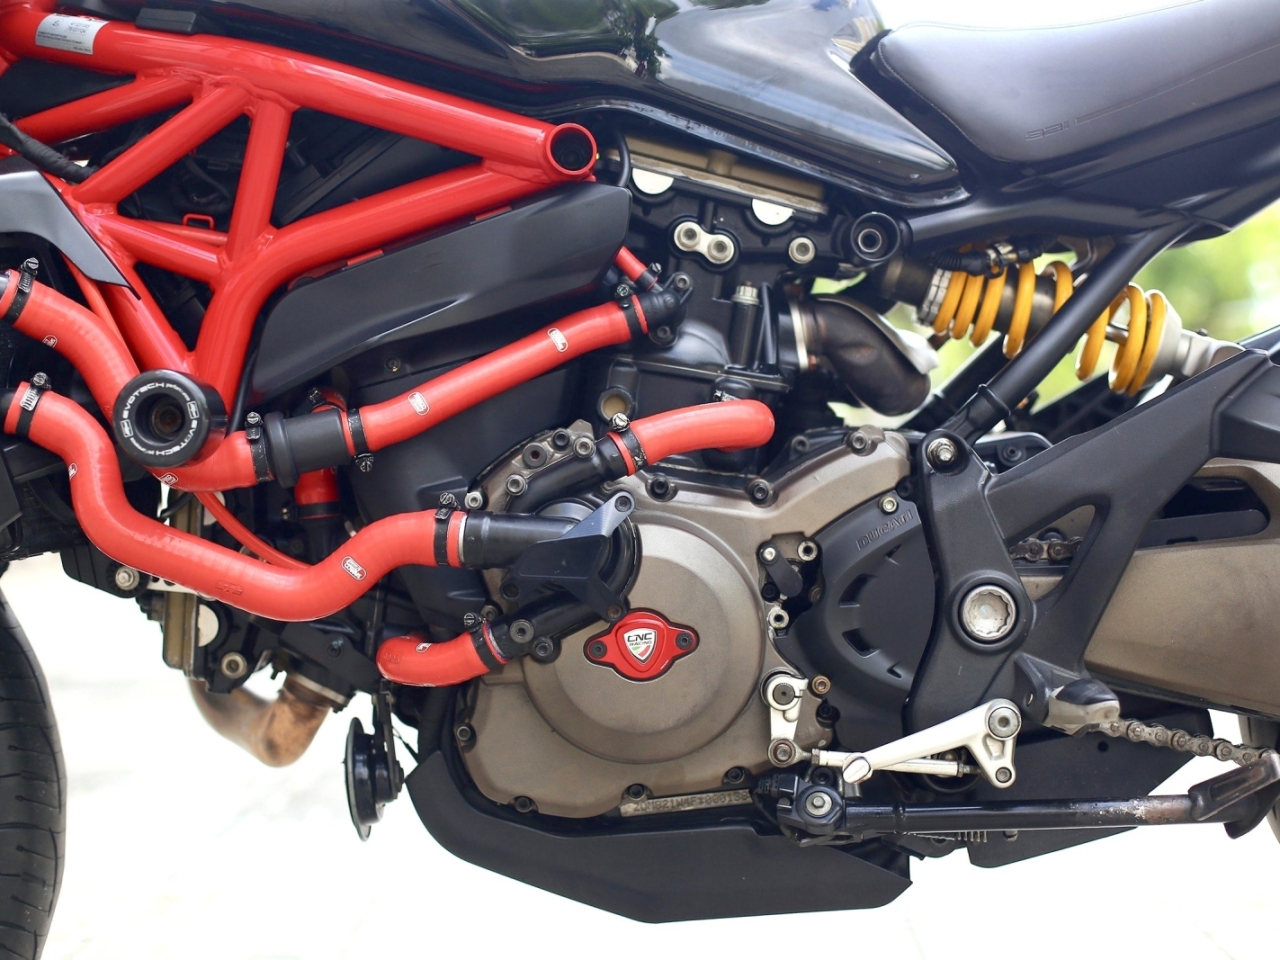 298. Ducati Monster 821 